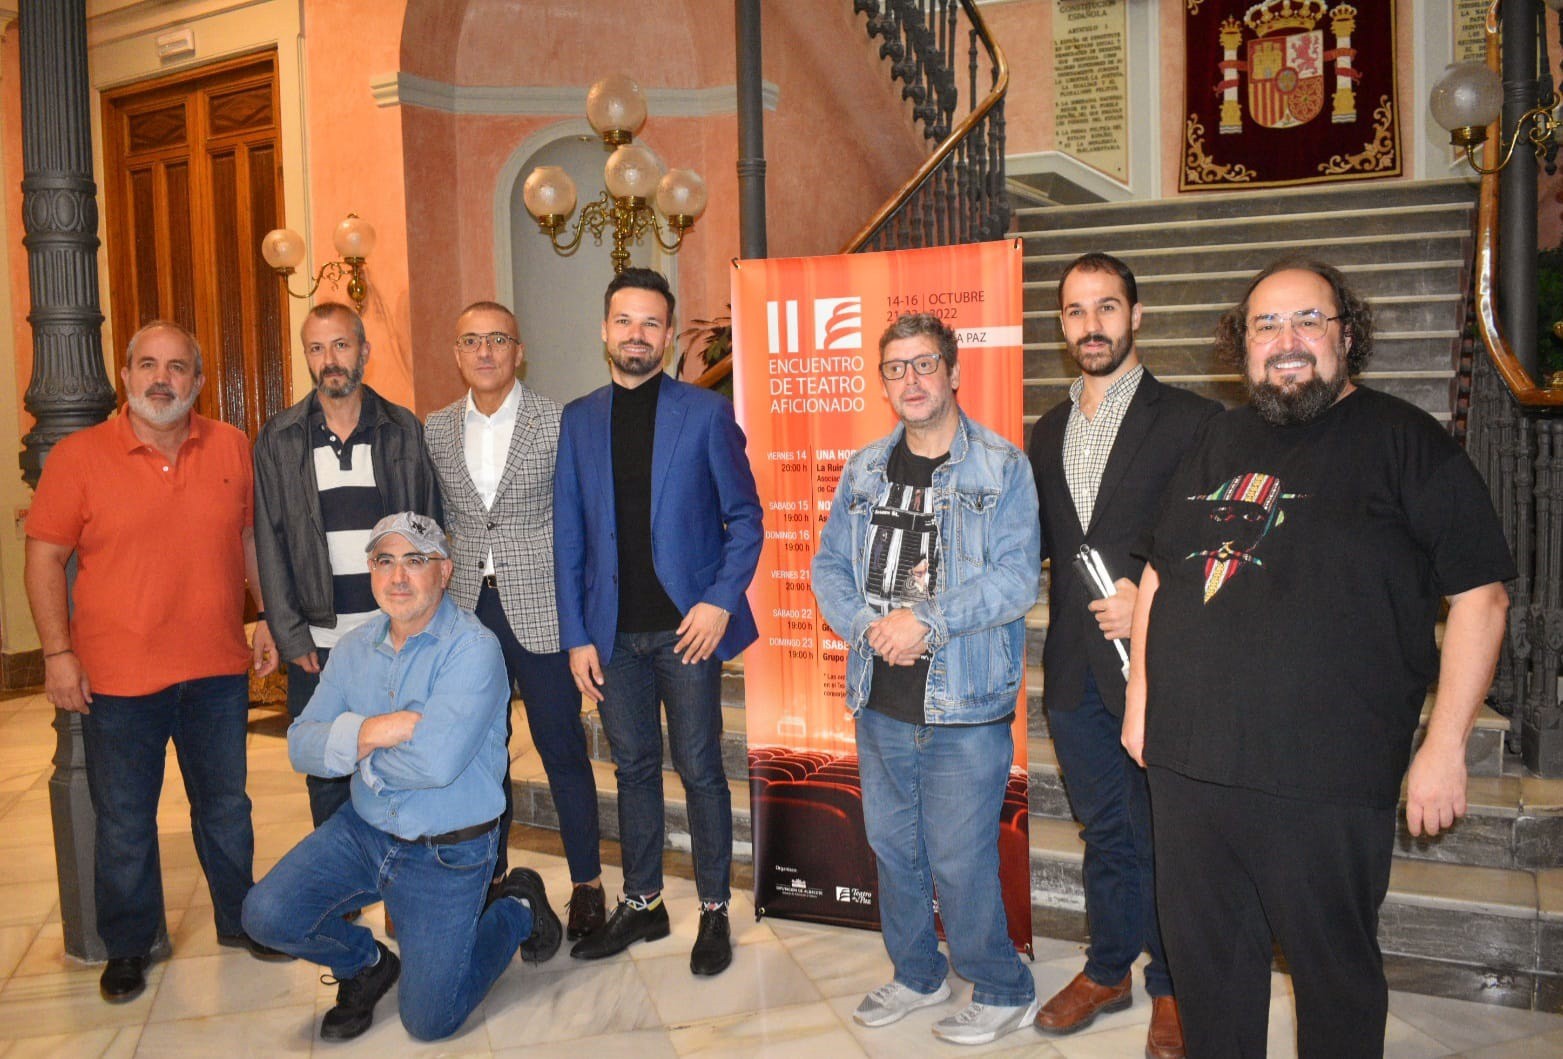 Presentación del II Encuentro de Teatro Aficionado de la Diputación de Albacete.